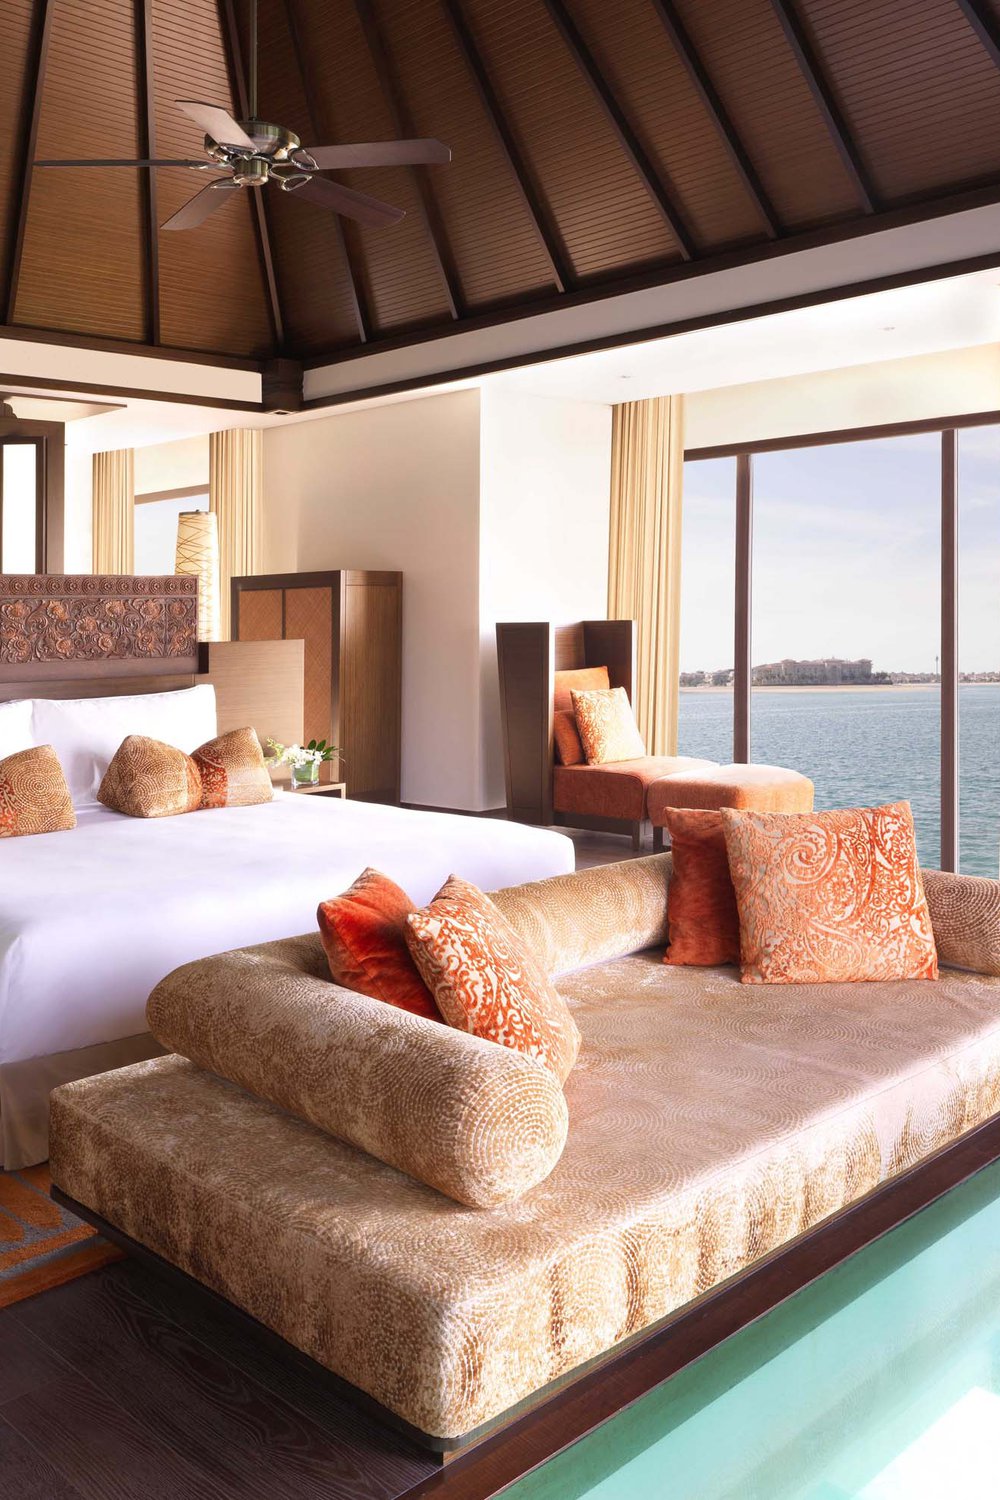 Dubai’s very own luxury beachfront retreat